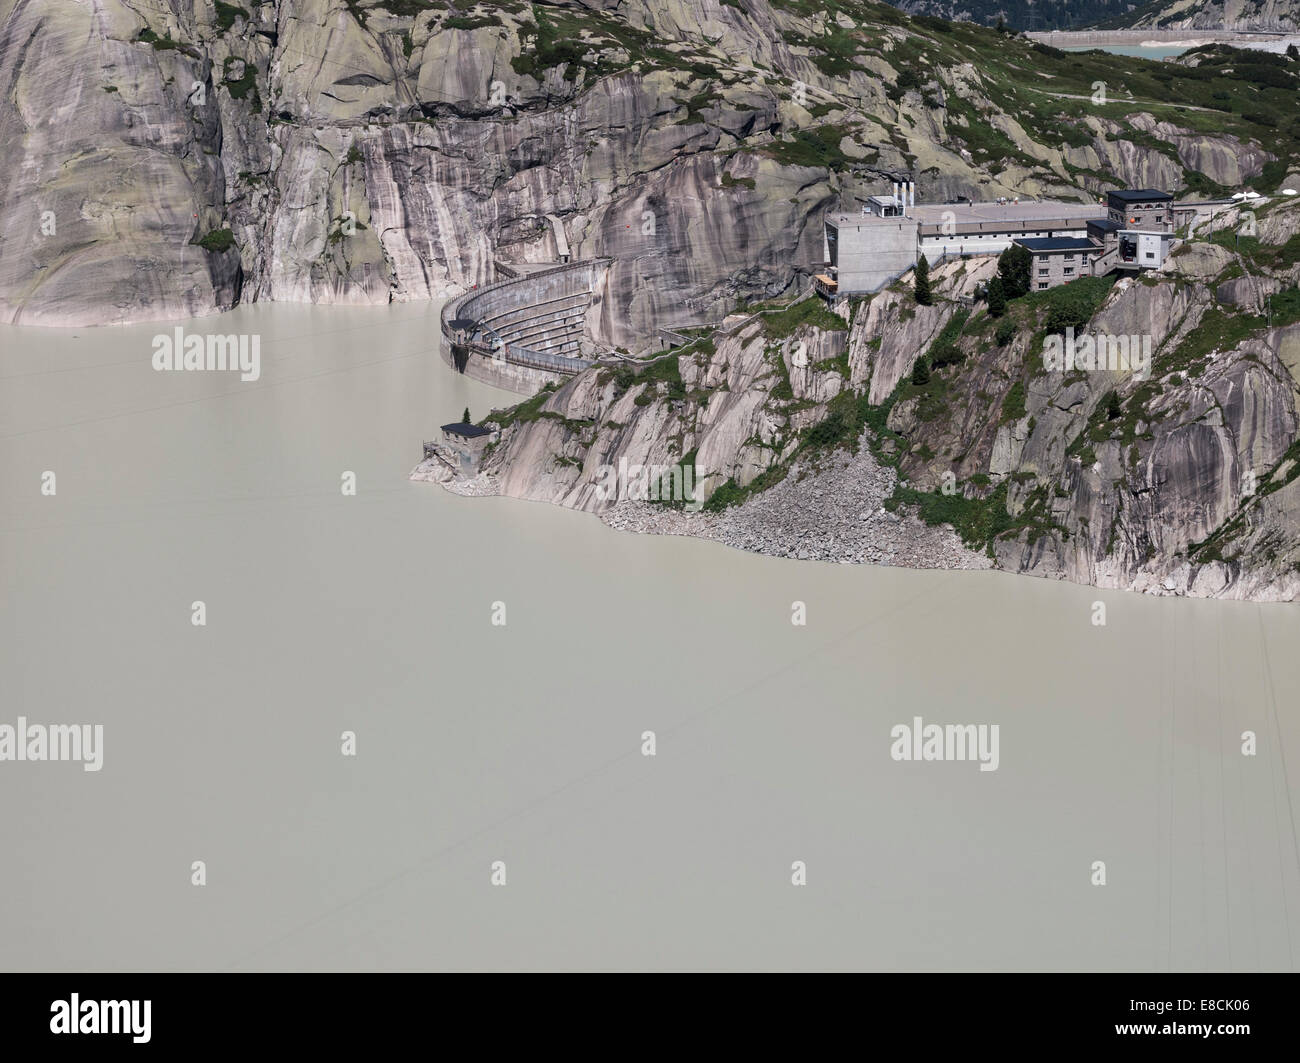 Lago lago Embalse Grimsel, embalse y utilidades de la planta de energía hidroeléctrica de Grimsel, Suiza, el 01 de agosto, 2013. Foto de stock